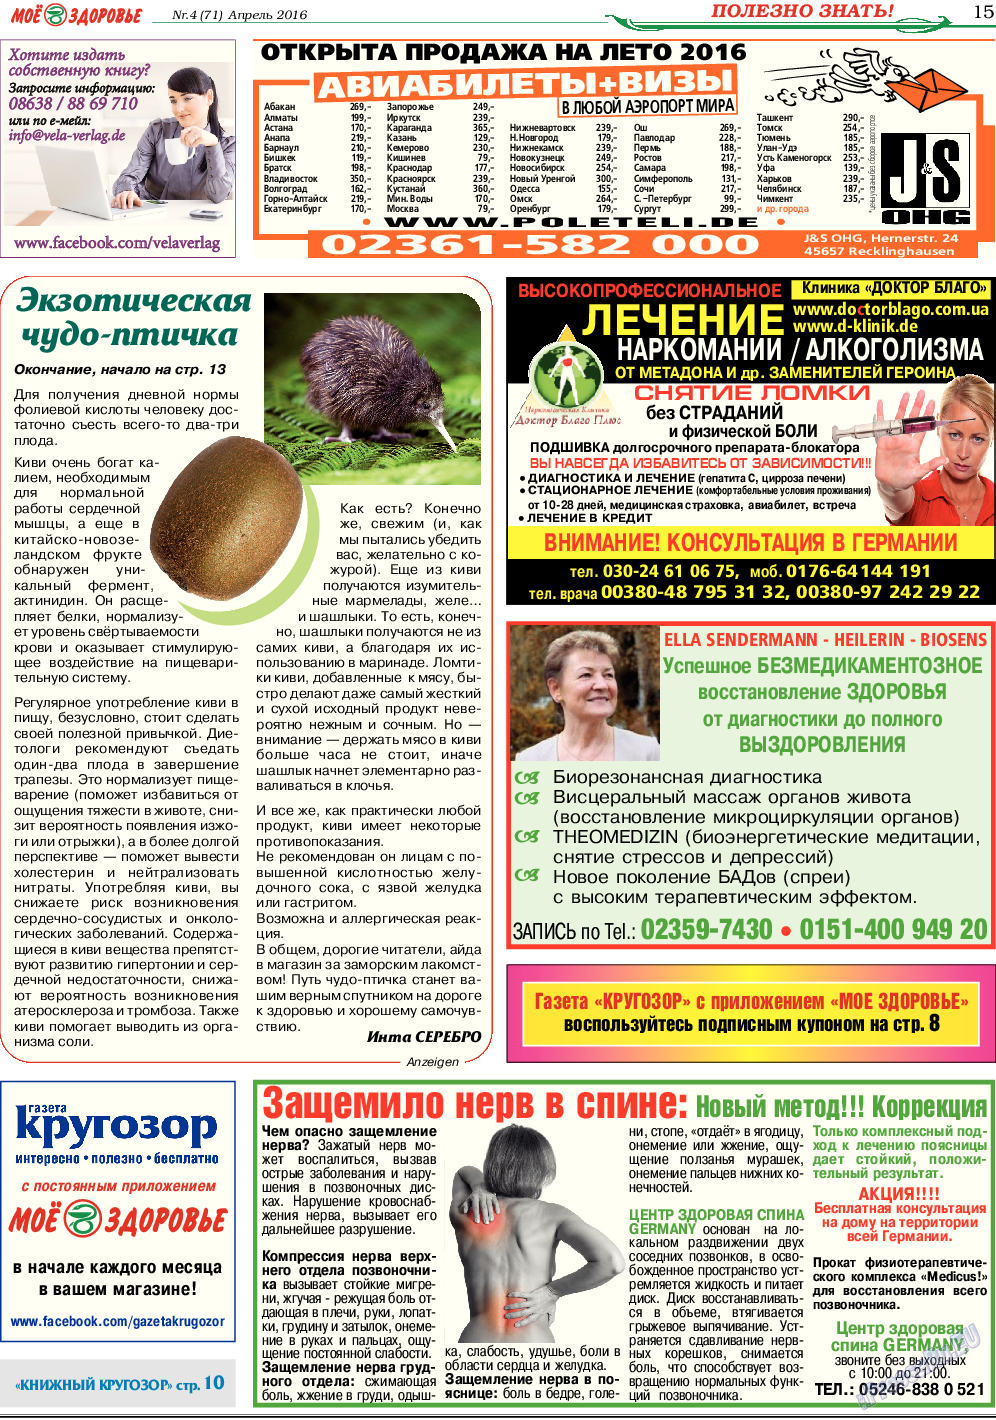 Кругозор, газета. 2016 №4 стр.15